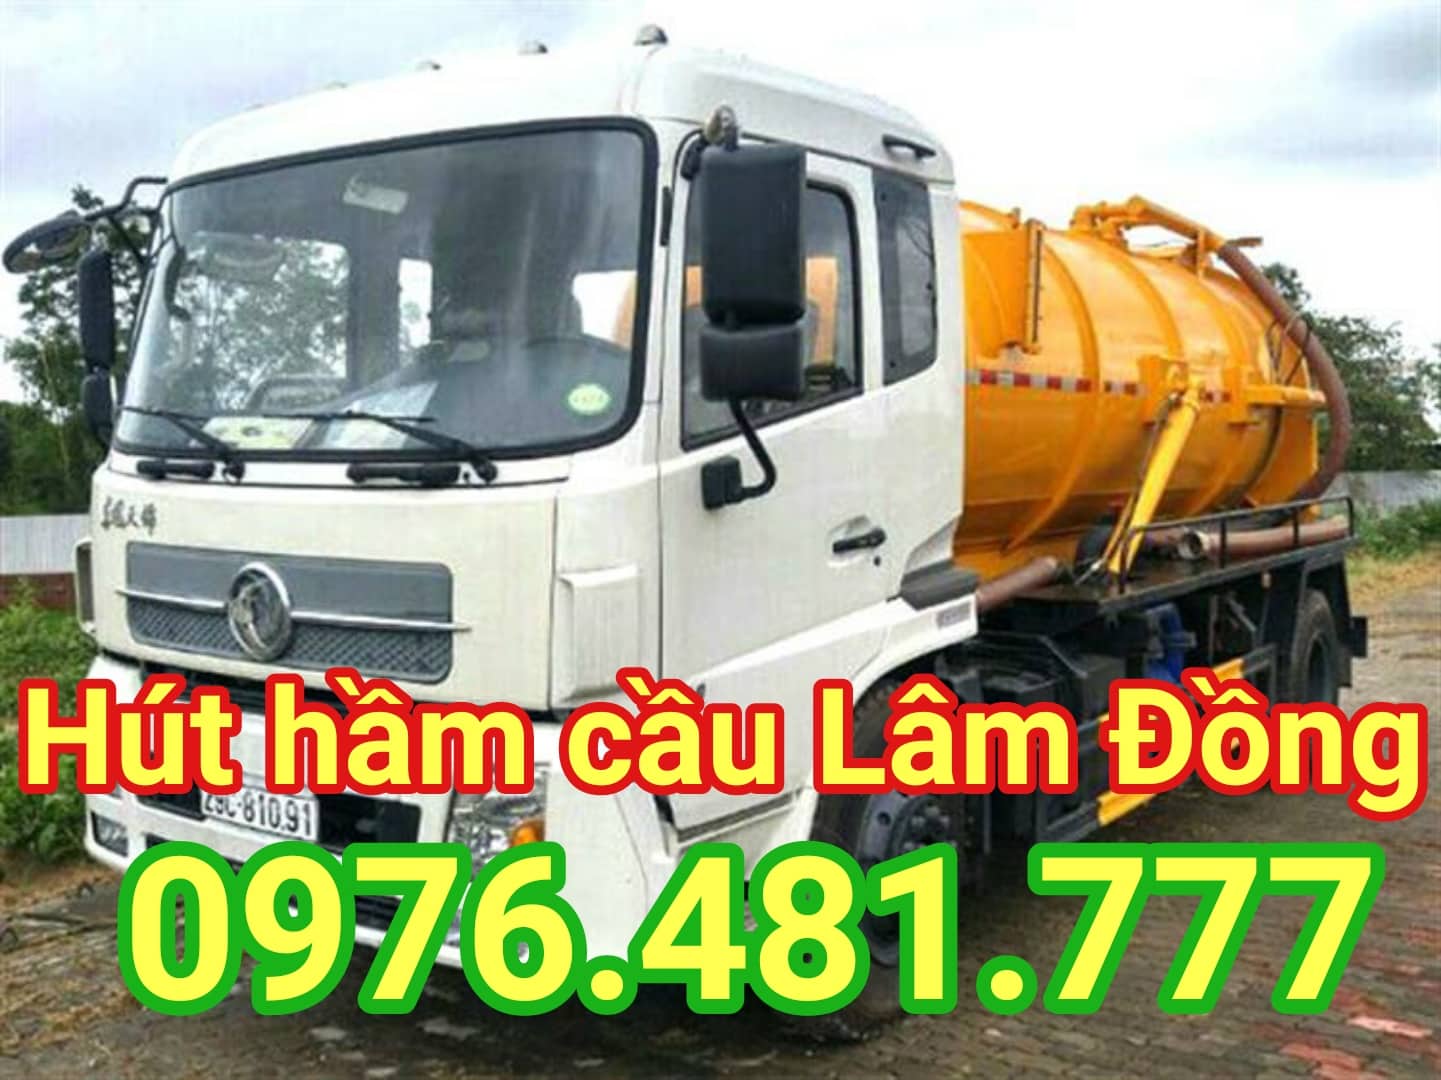 Dịch vụ hút hầm cầu Lâm Đồng 